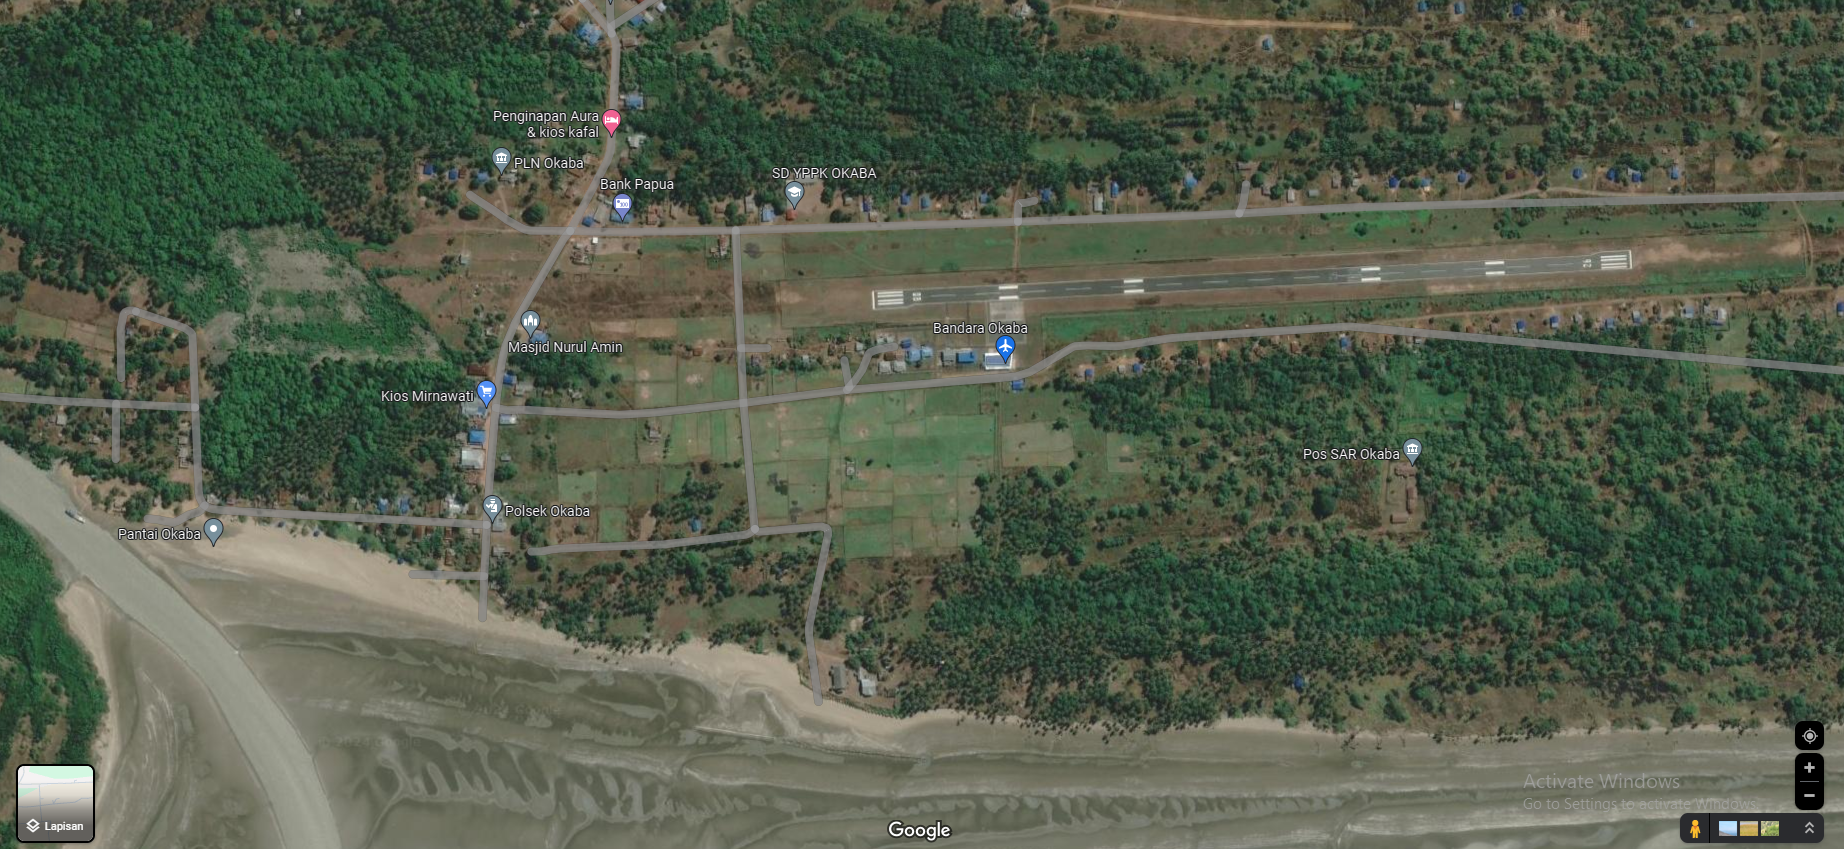 Gambar Peta Bandara Peta Bandara Okaba
https://maps.app.goo.gl/akYT8r2tKBE2gu2S6